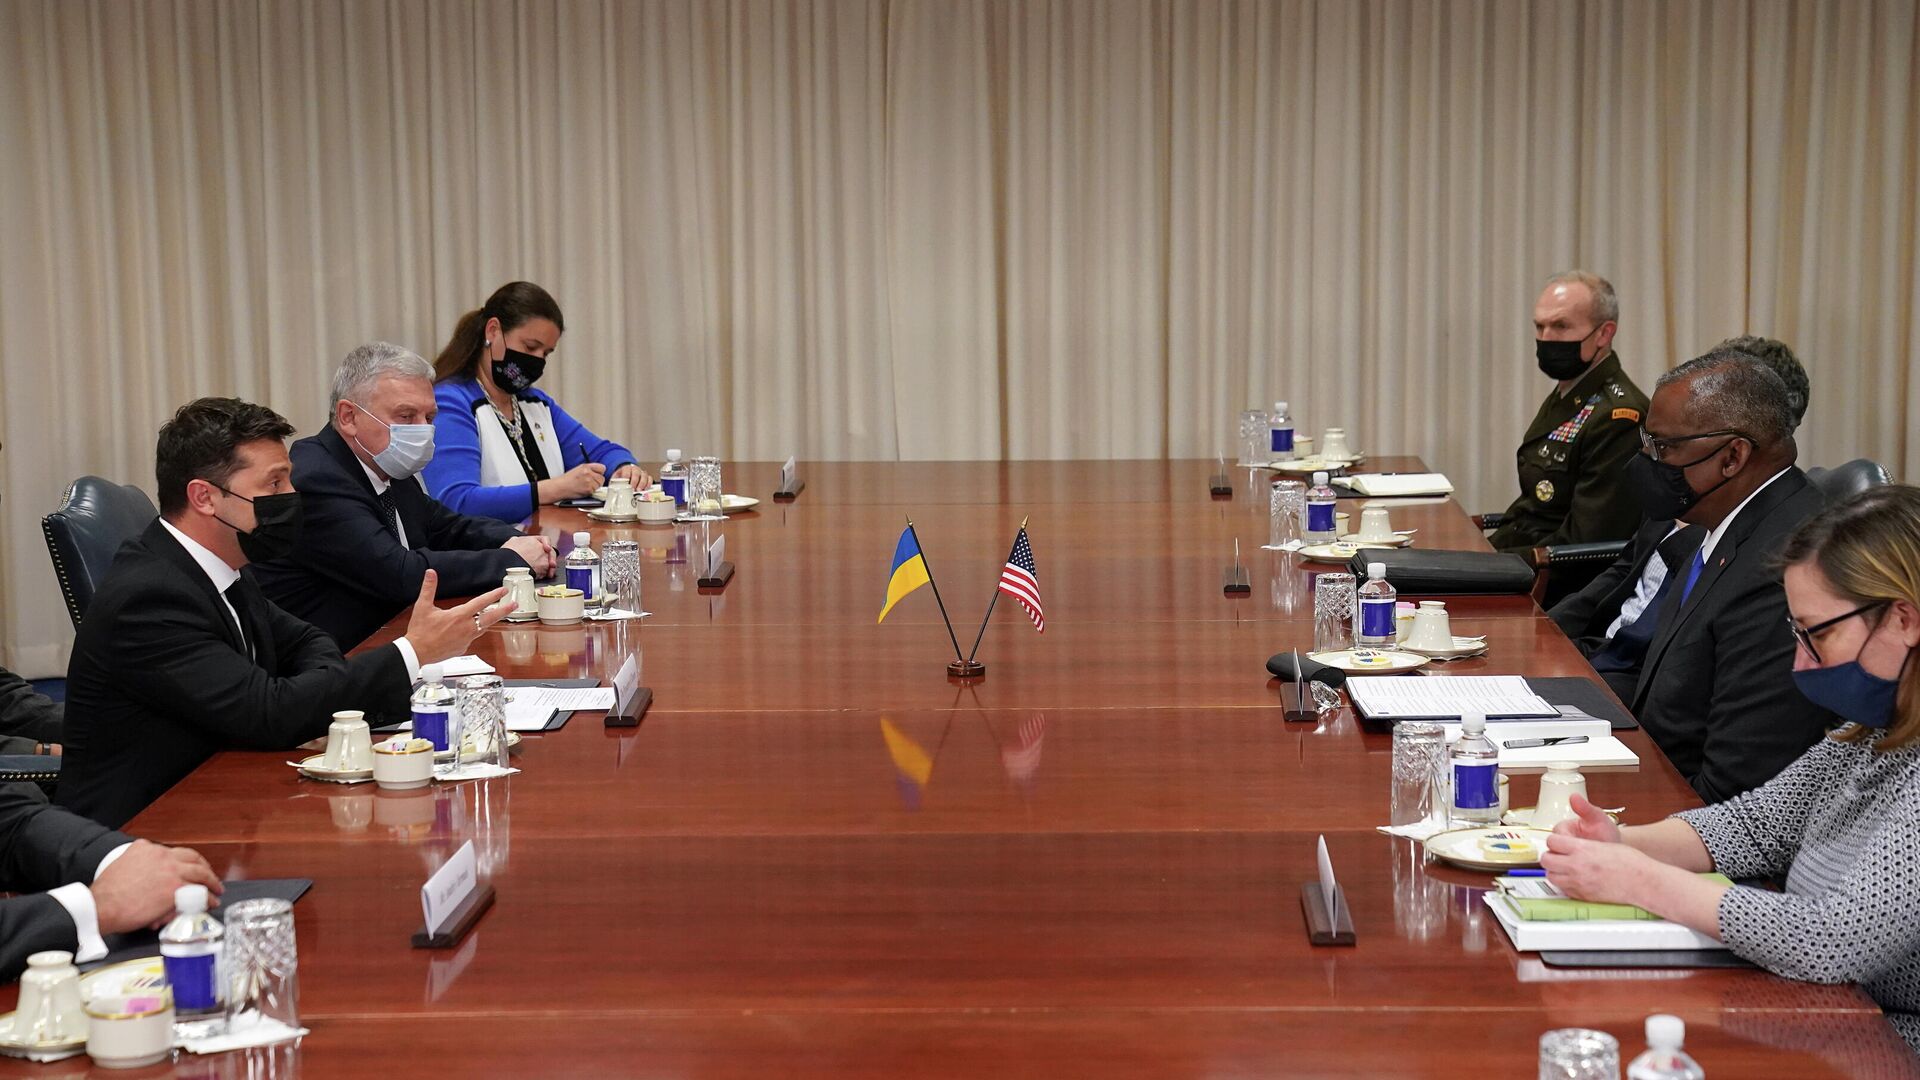 El secretario de Defensa de EEUU, Lloyd Austin, se reúne con el presidente de Ucrania, Volodímir Zelenskiy, y el ministro de Defensa de Ucrania, Andriy Taran, en el Pentágono - Sputnik Mundo, 1920, 31.08.2021